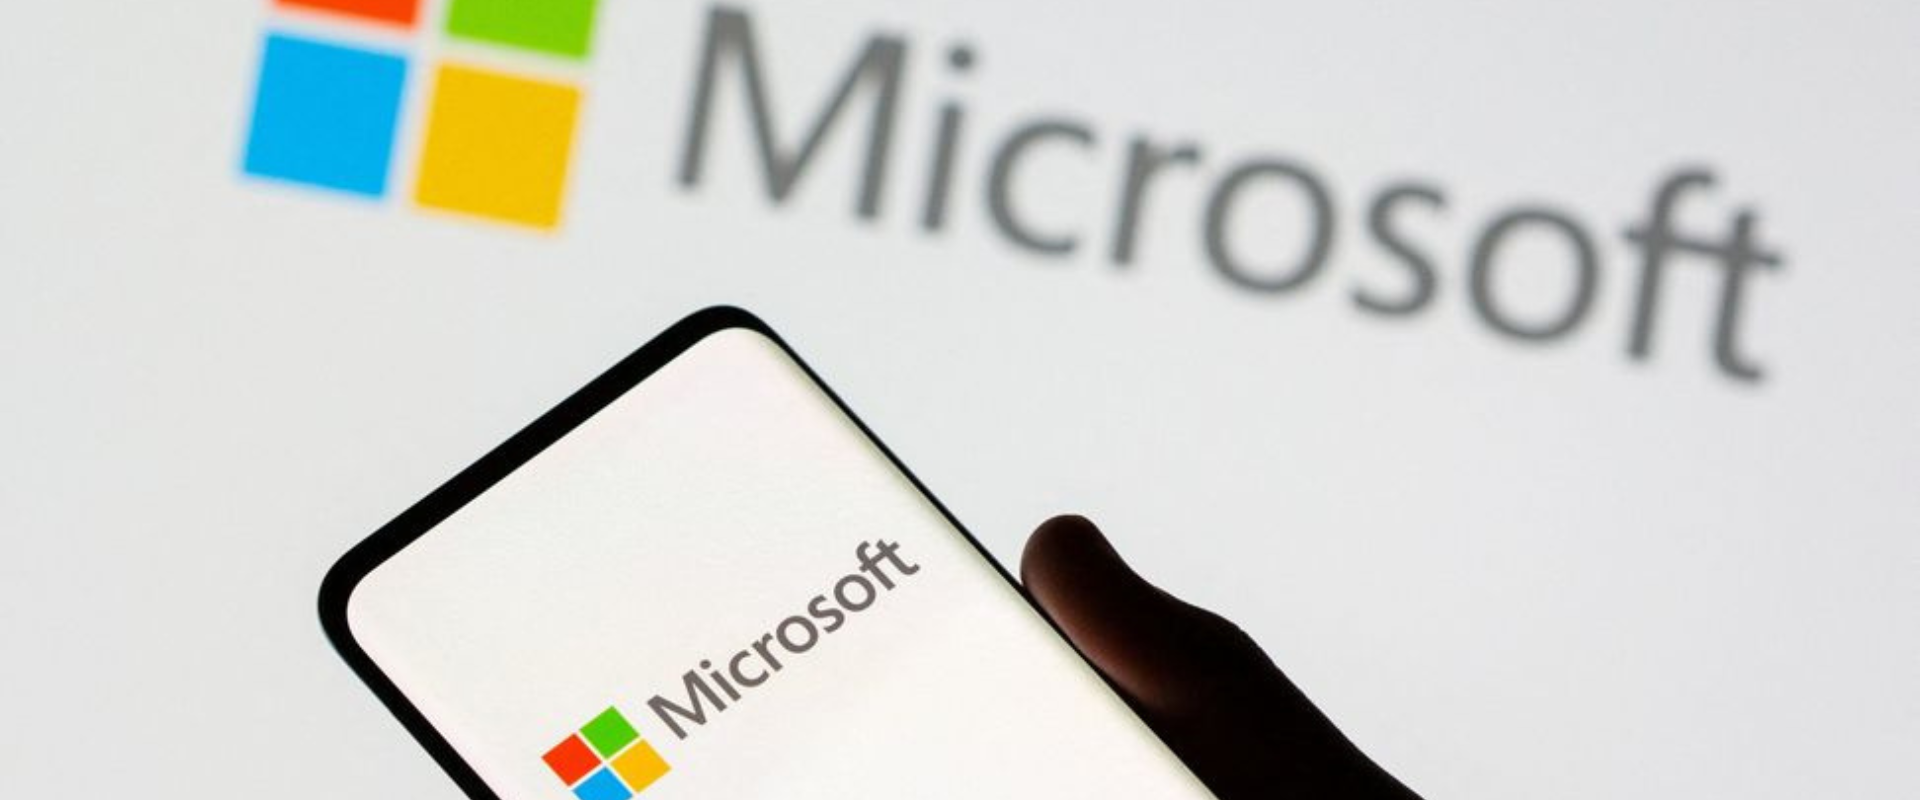 Microsoft 365 ha presentado fallas hoy Jueves 20 de Abril